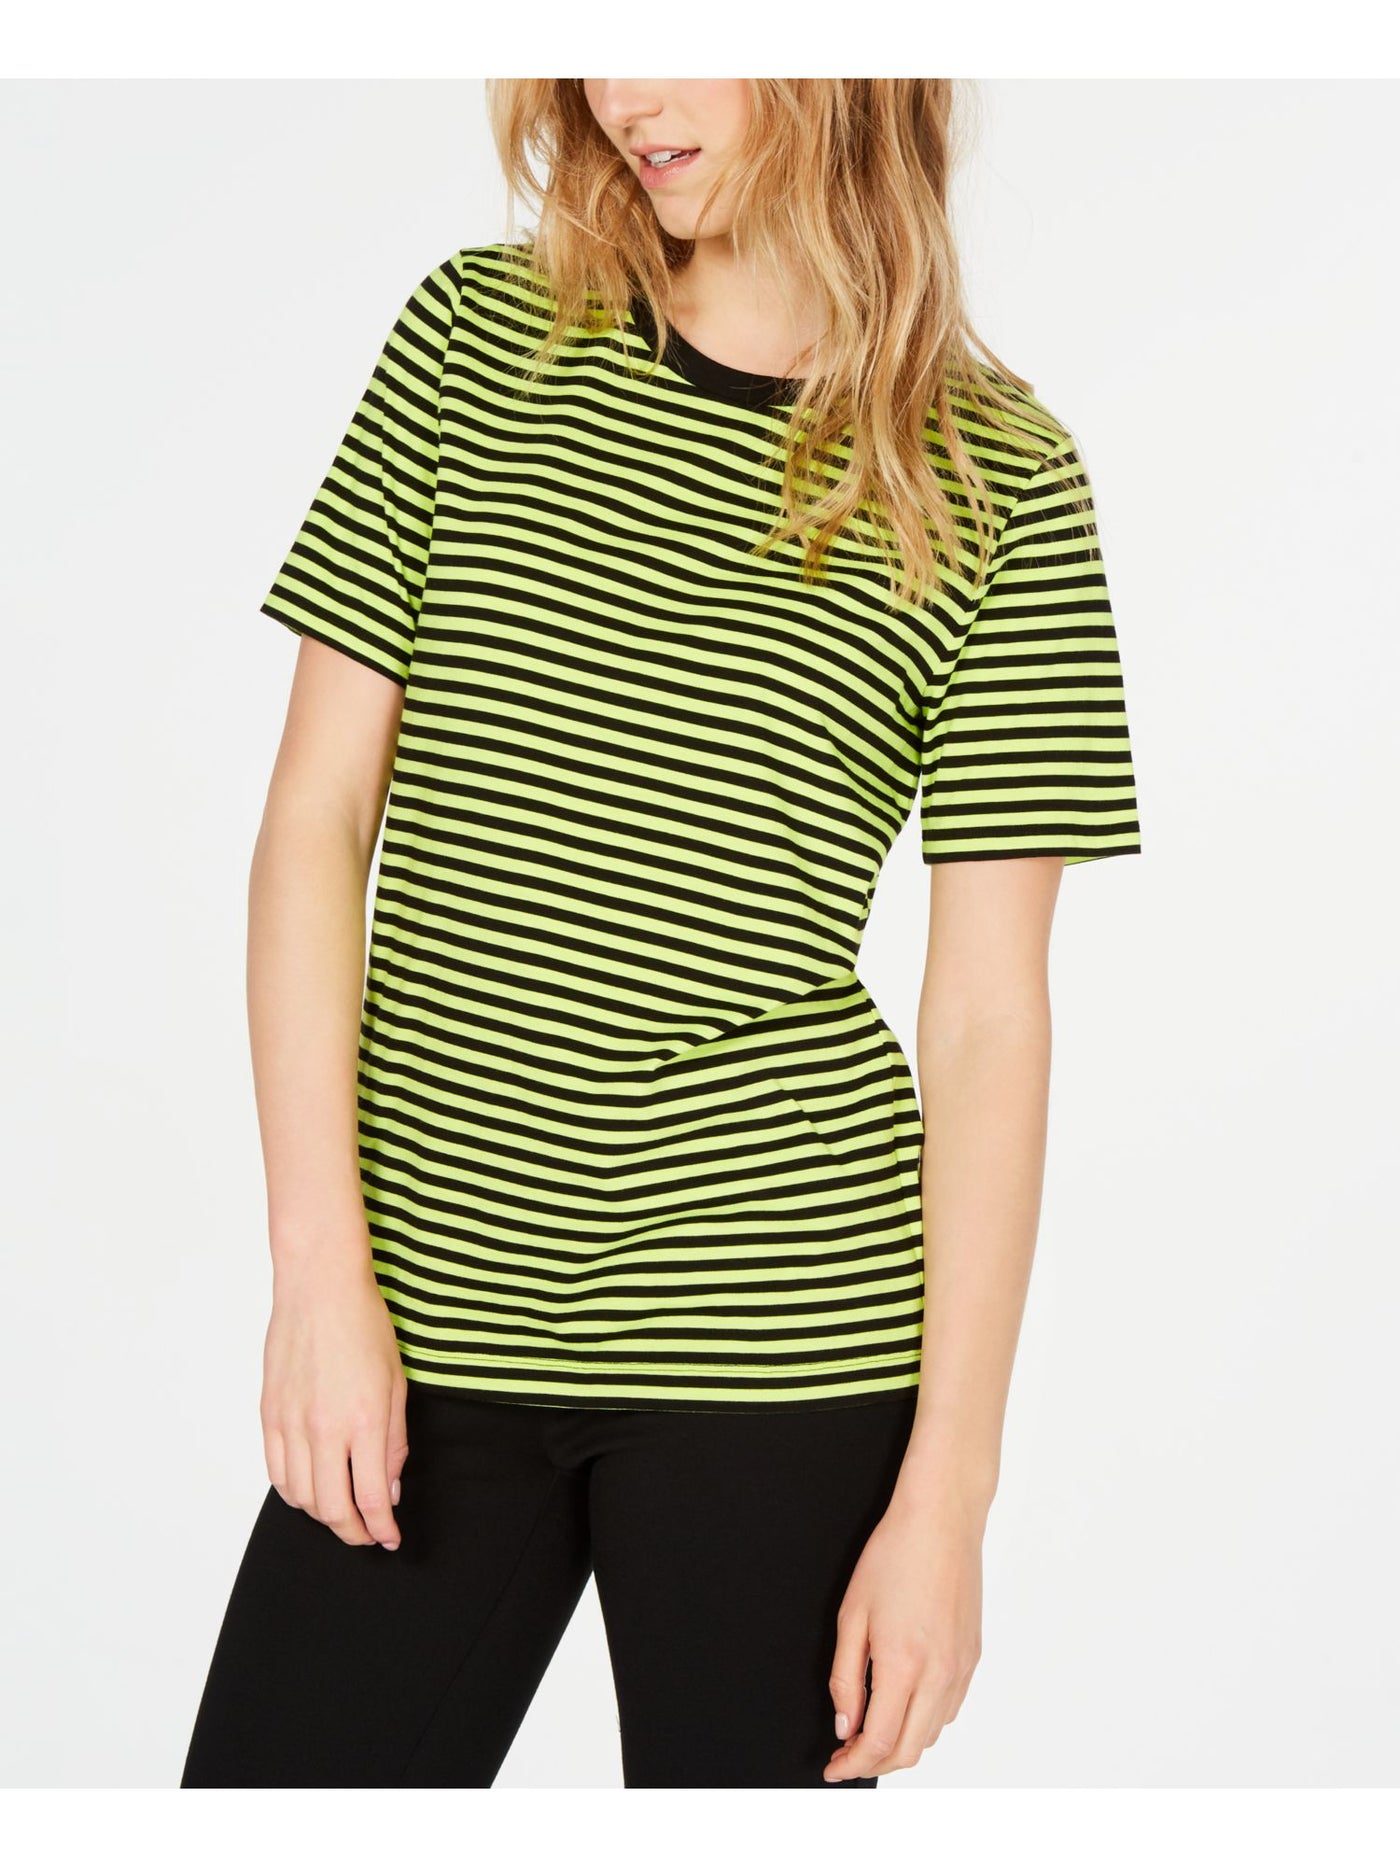 MICHAEL KORS Womens Green Striped Short Sleeve Crew Neck T-Shirt 2XS